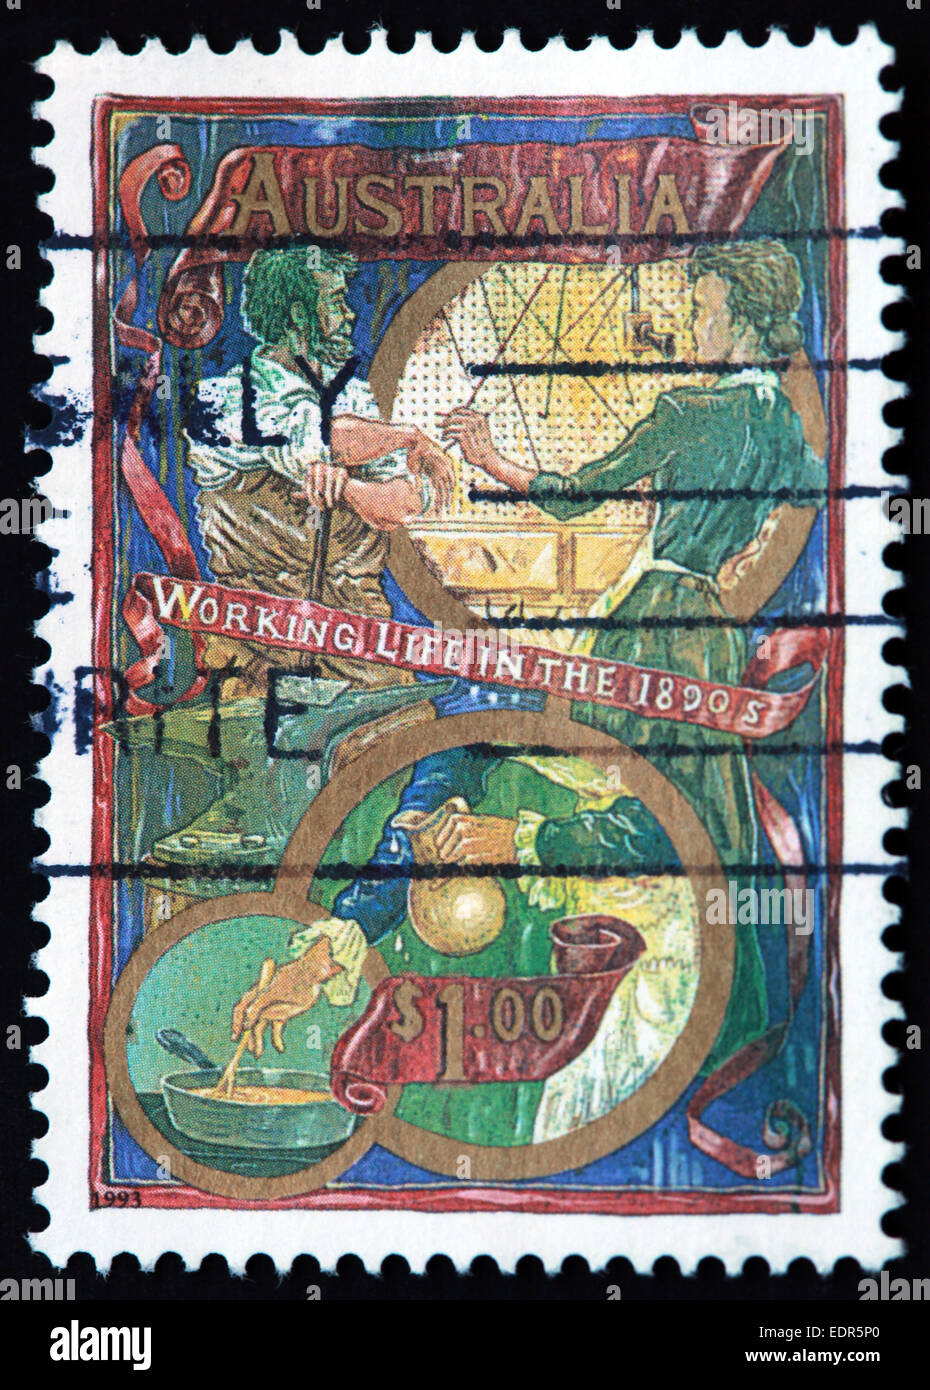 Utilisé et oblitérée Australie / Austrailian Stamp $1 la vie au travail dans les années 1890, 1993 Banque D'Images